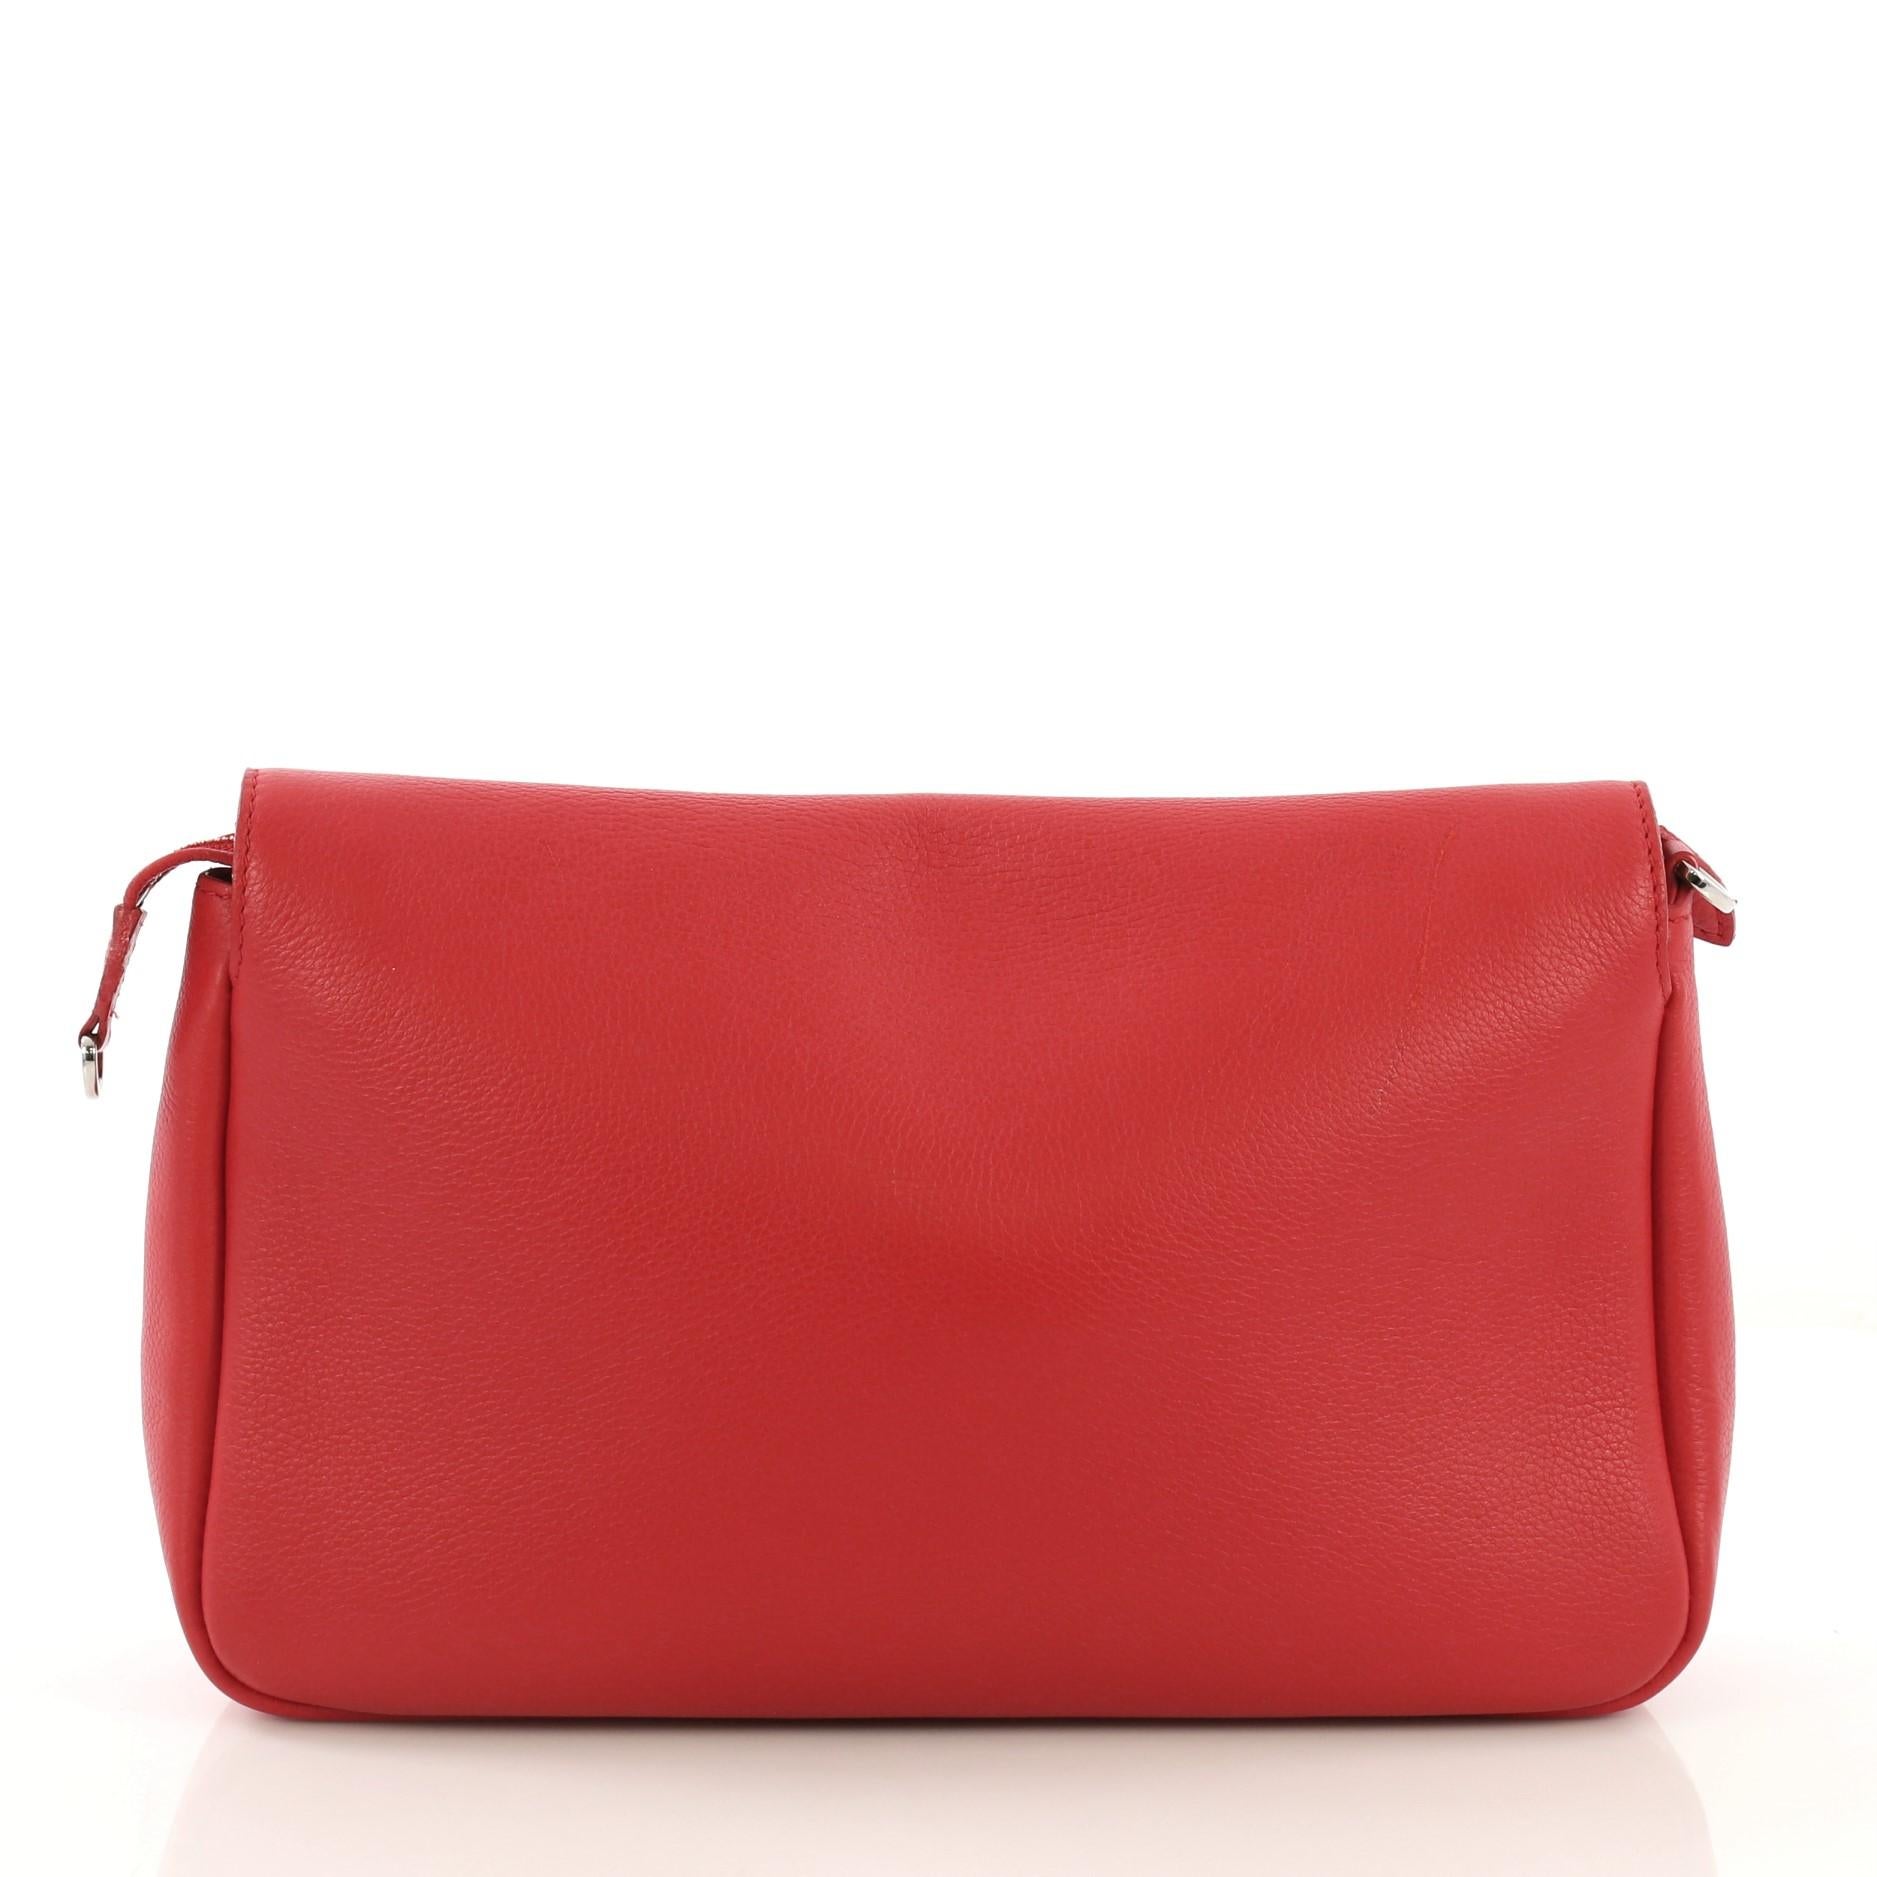 Red Louis Vuitton Essential Cuir Boheme Handbag Leather